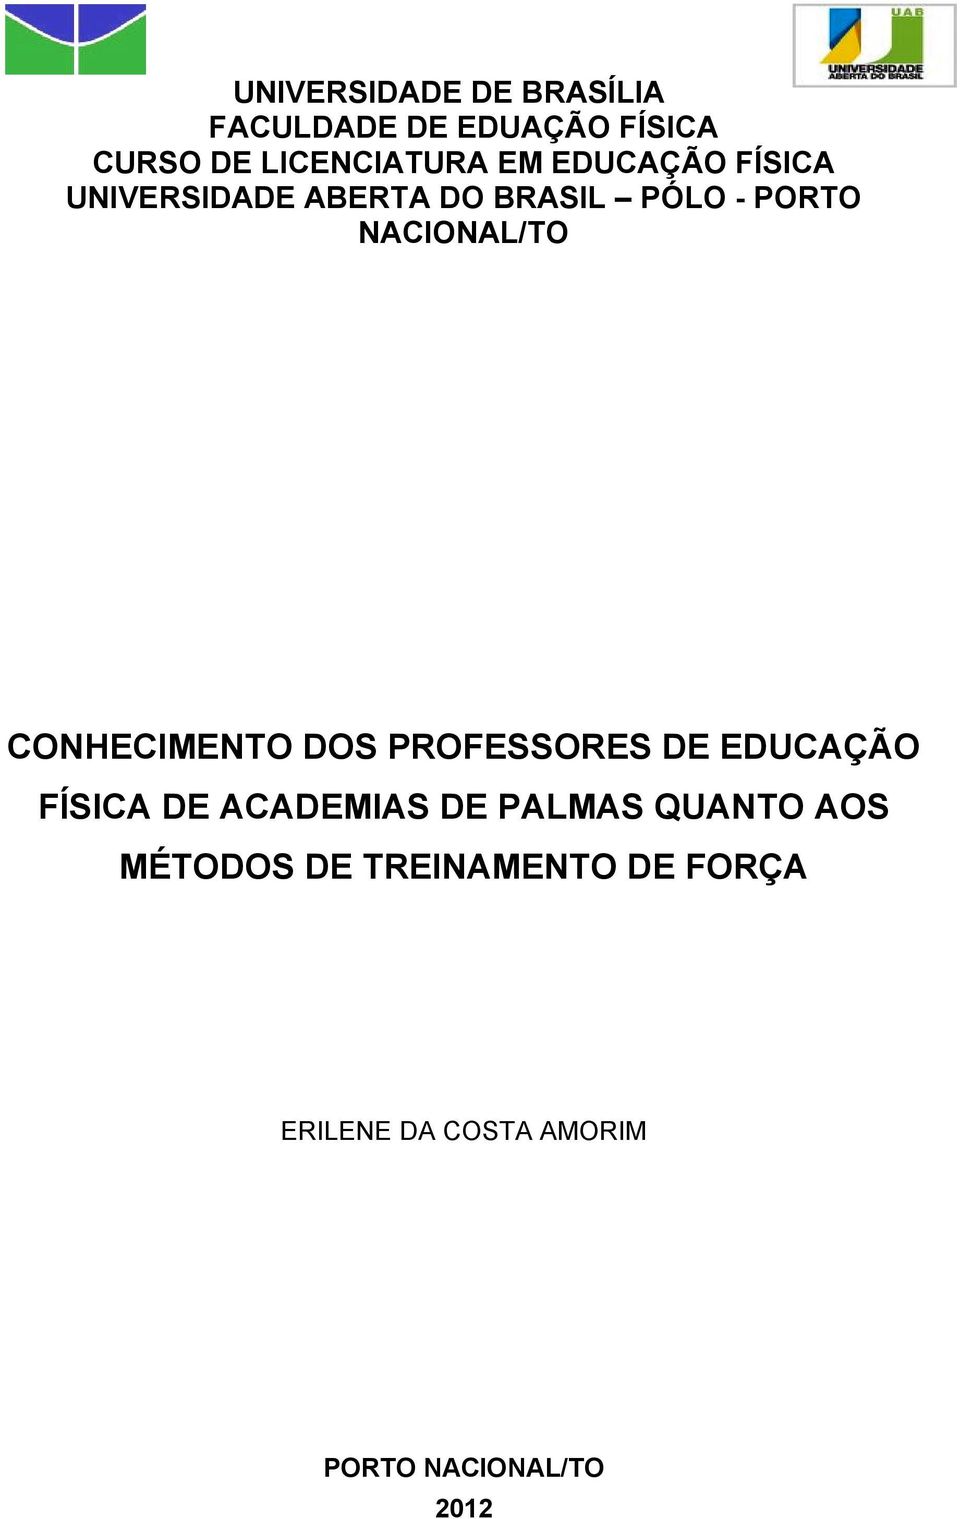 CONHECIMENTO DOS PROFESSORES DE EDUCAÇÃO FÍSICA DE ACADEMIAS DE PALMAS QUANTO